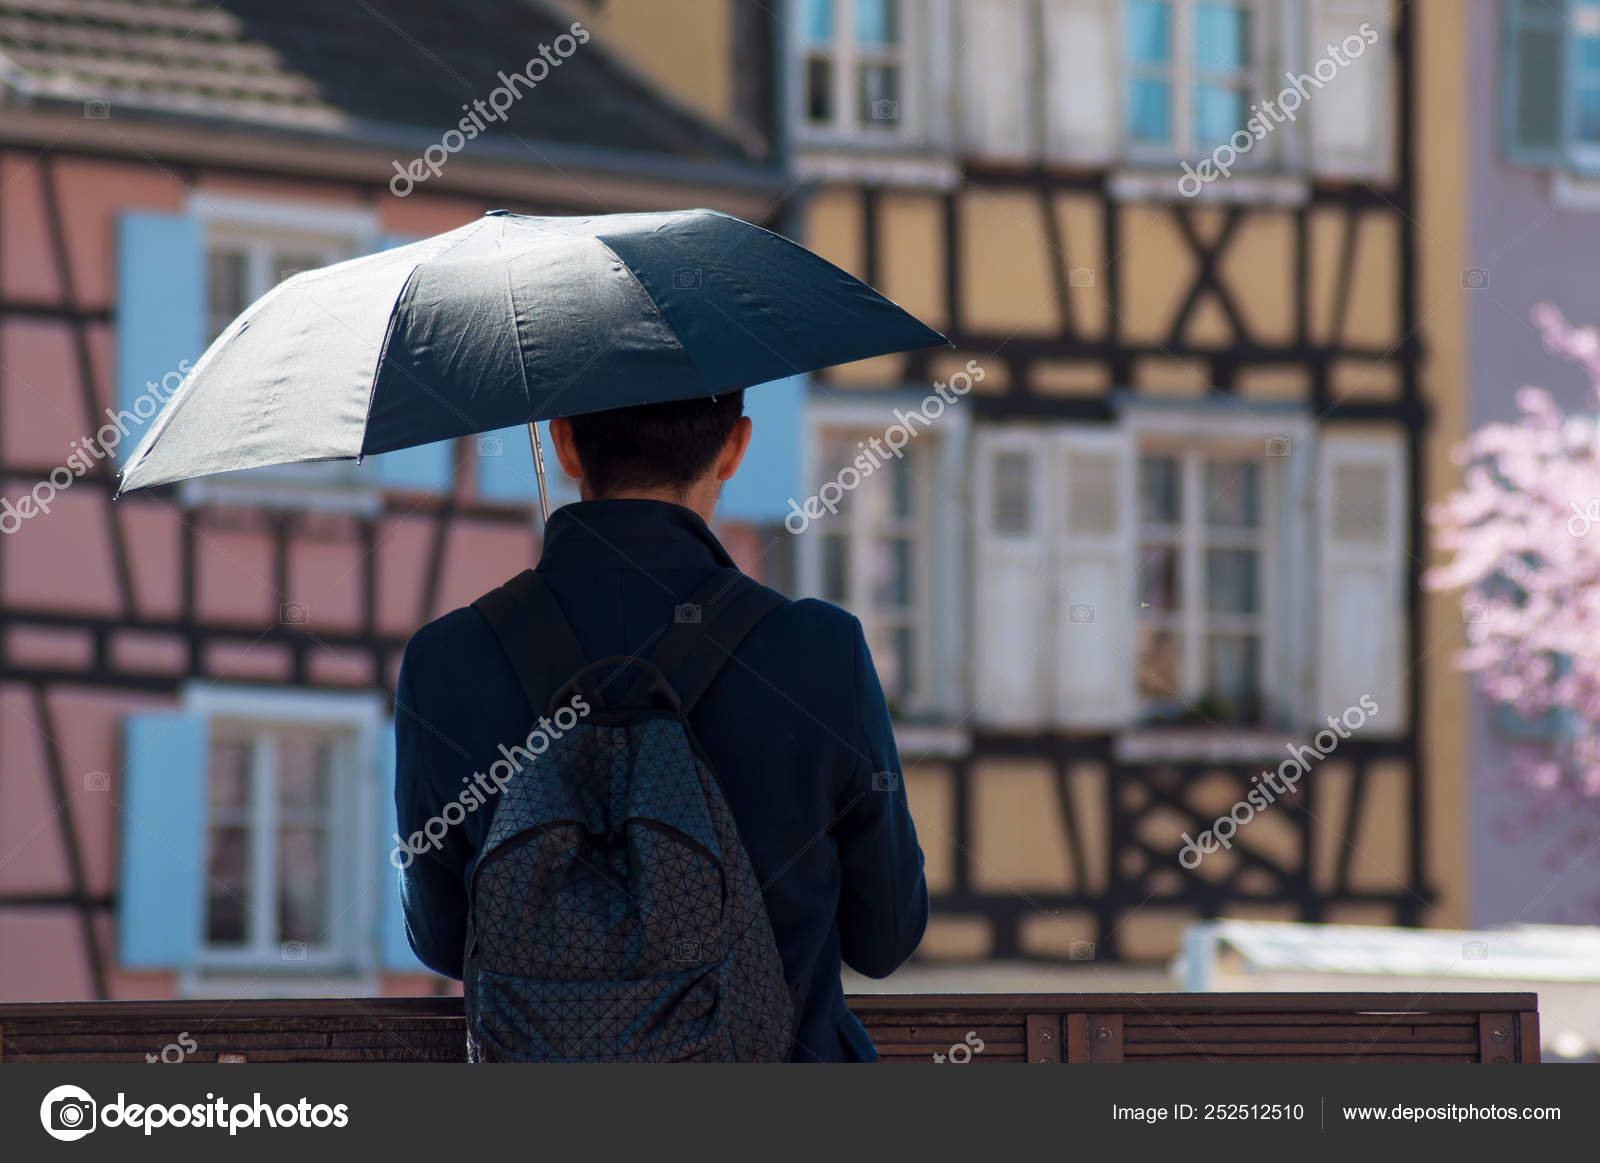 Oppressor background acidity Asiático turista com guarda-chuva tirar uma foto na ponte — Fotografia de  Stock Editorial © NeydtStock #252512510